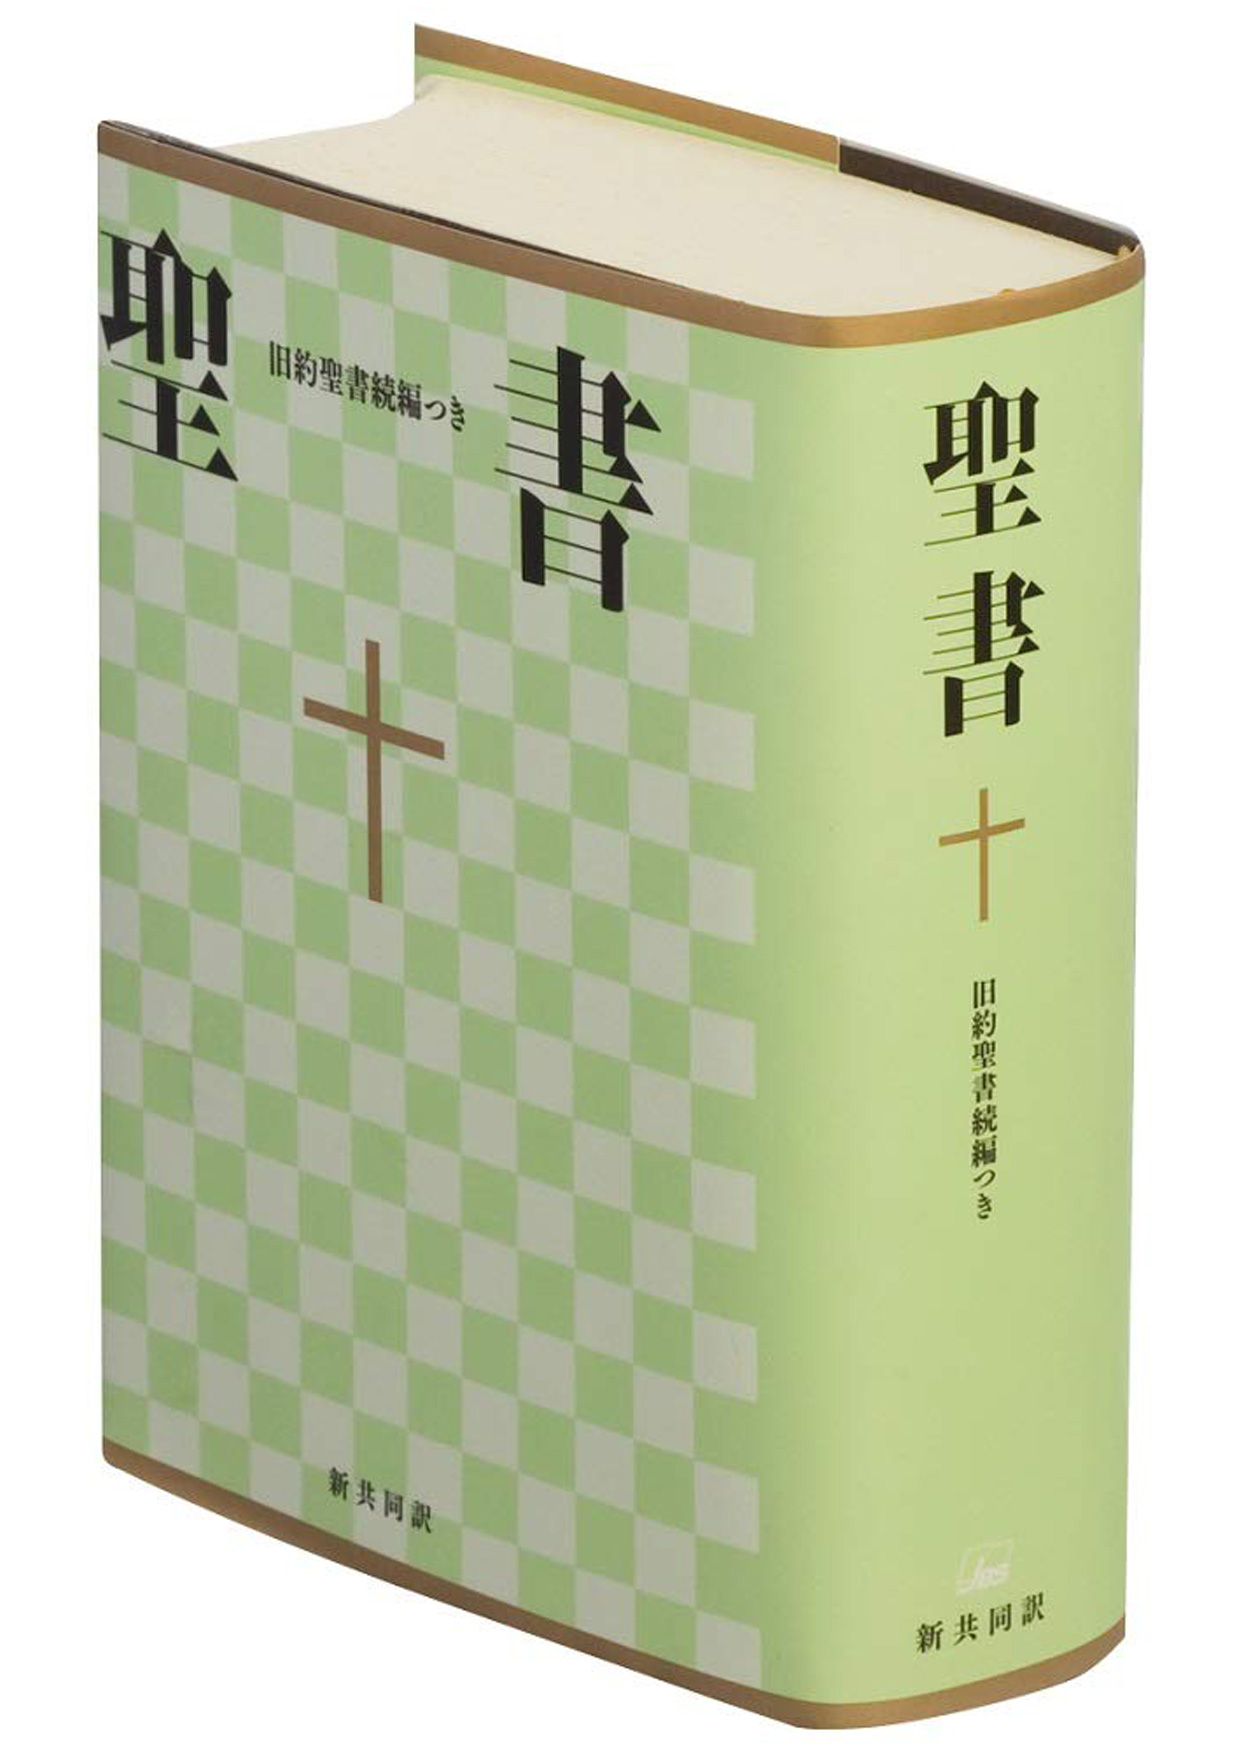 「聖書 旧約聖書続編つき 新共同訳」日本聖書協会 刊